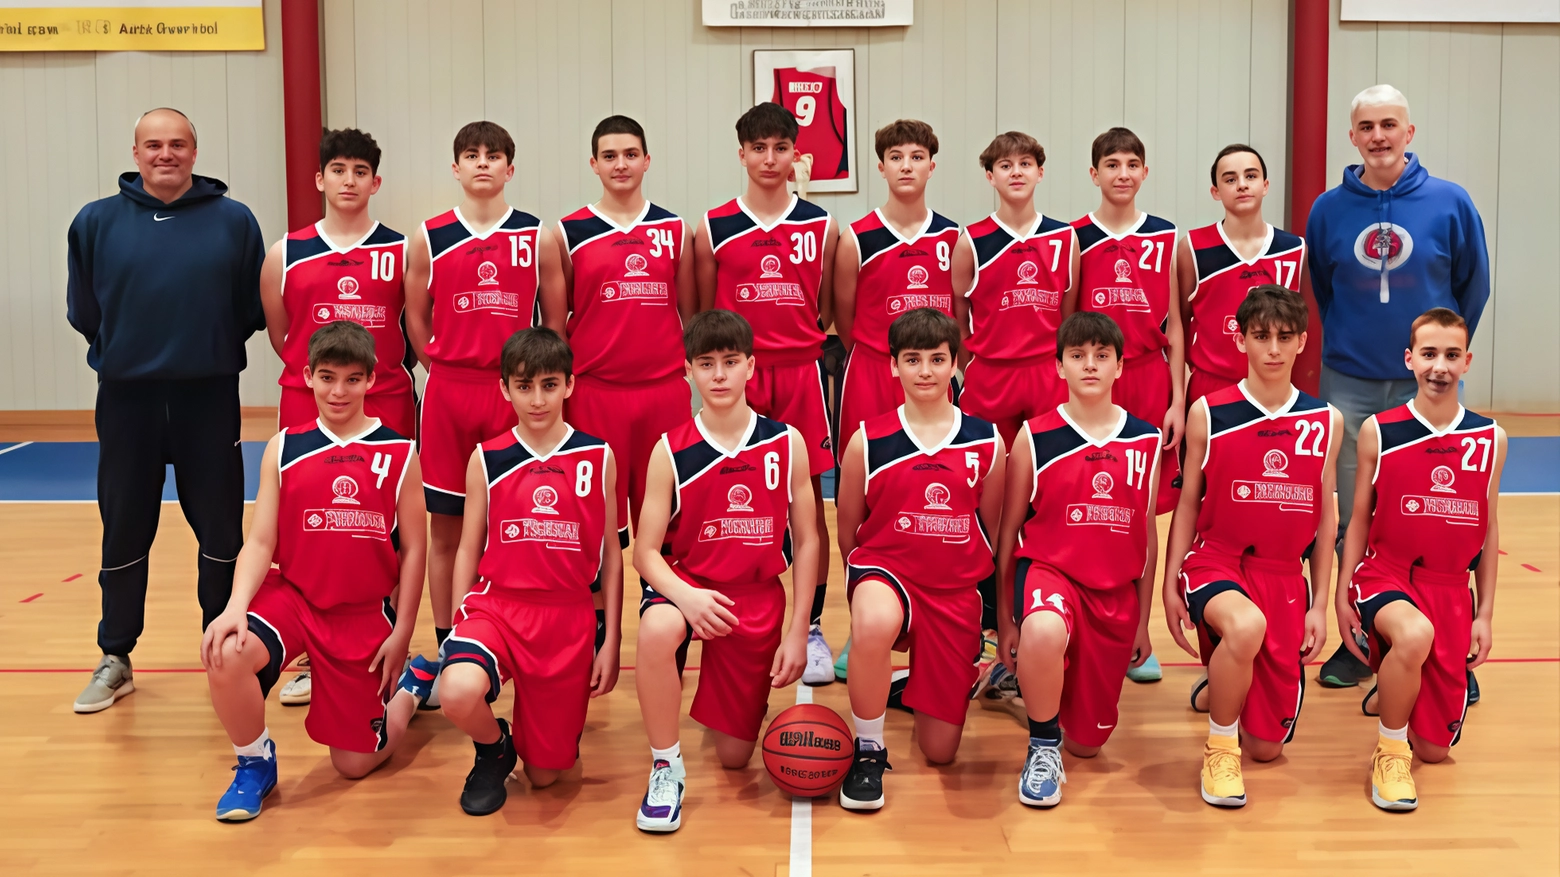 L'Under 15 del Basket Comacchio vince il girone e accede ai playoff per il titolo regionale, superando Lugo in una partita decisiva. Coach e presidente esultano per il successo ottenuto con impegno e dedizione.